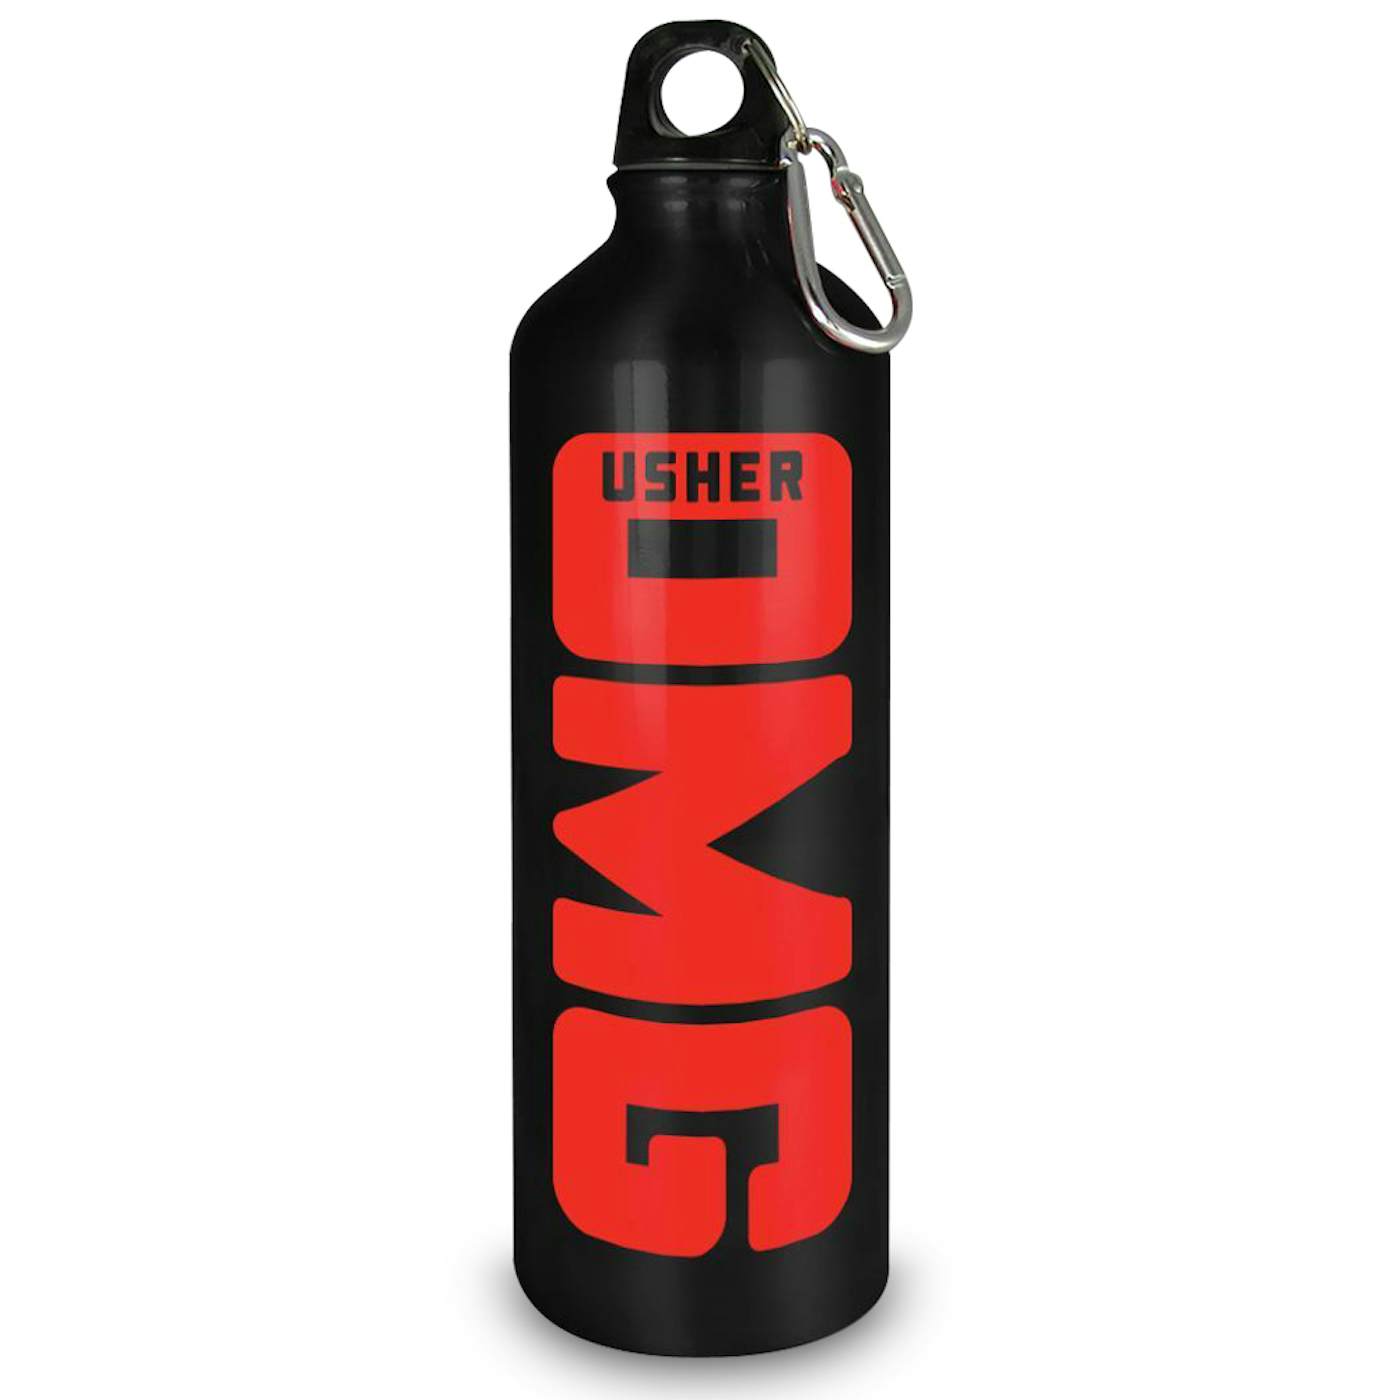 Usher OMG Water Bottle - Aluminum